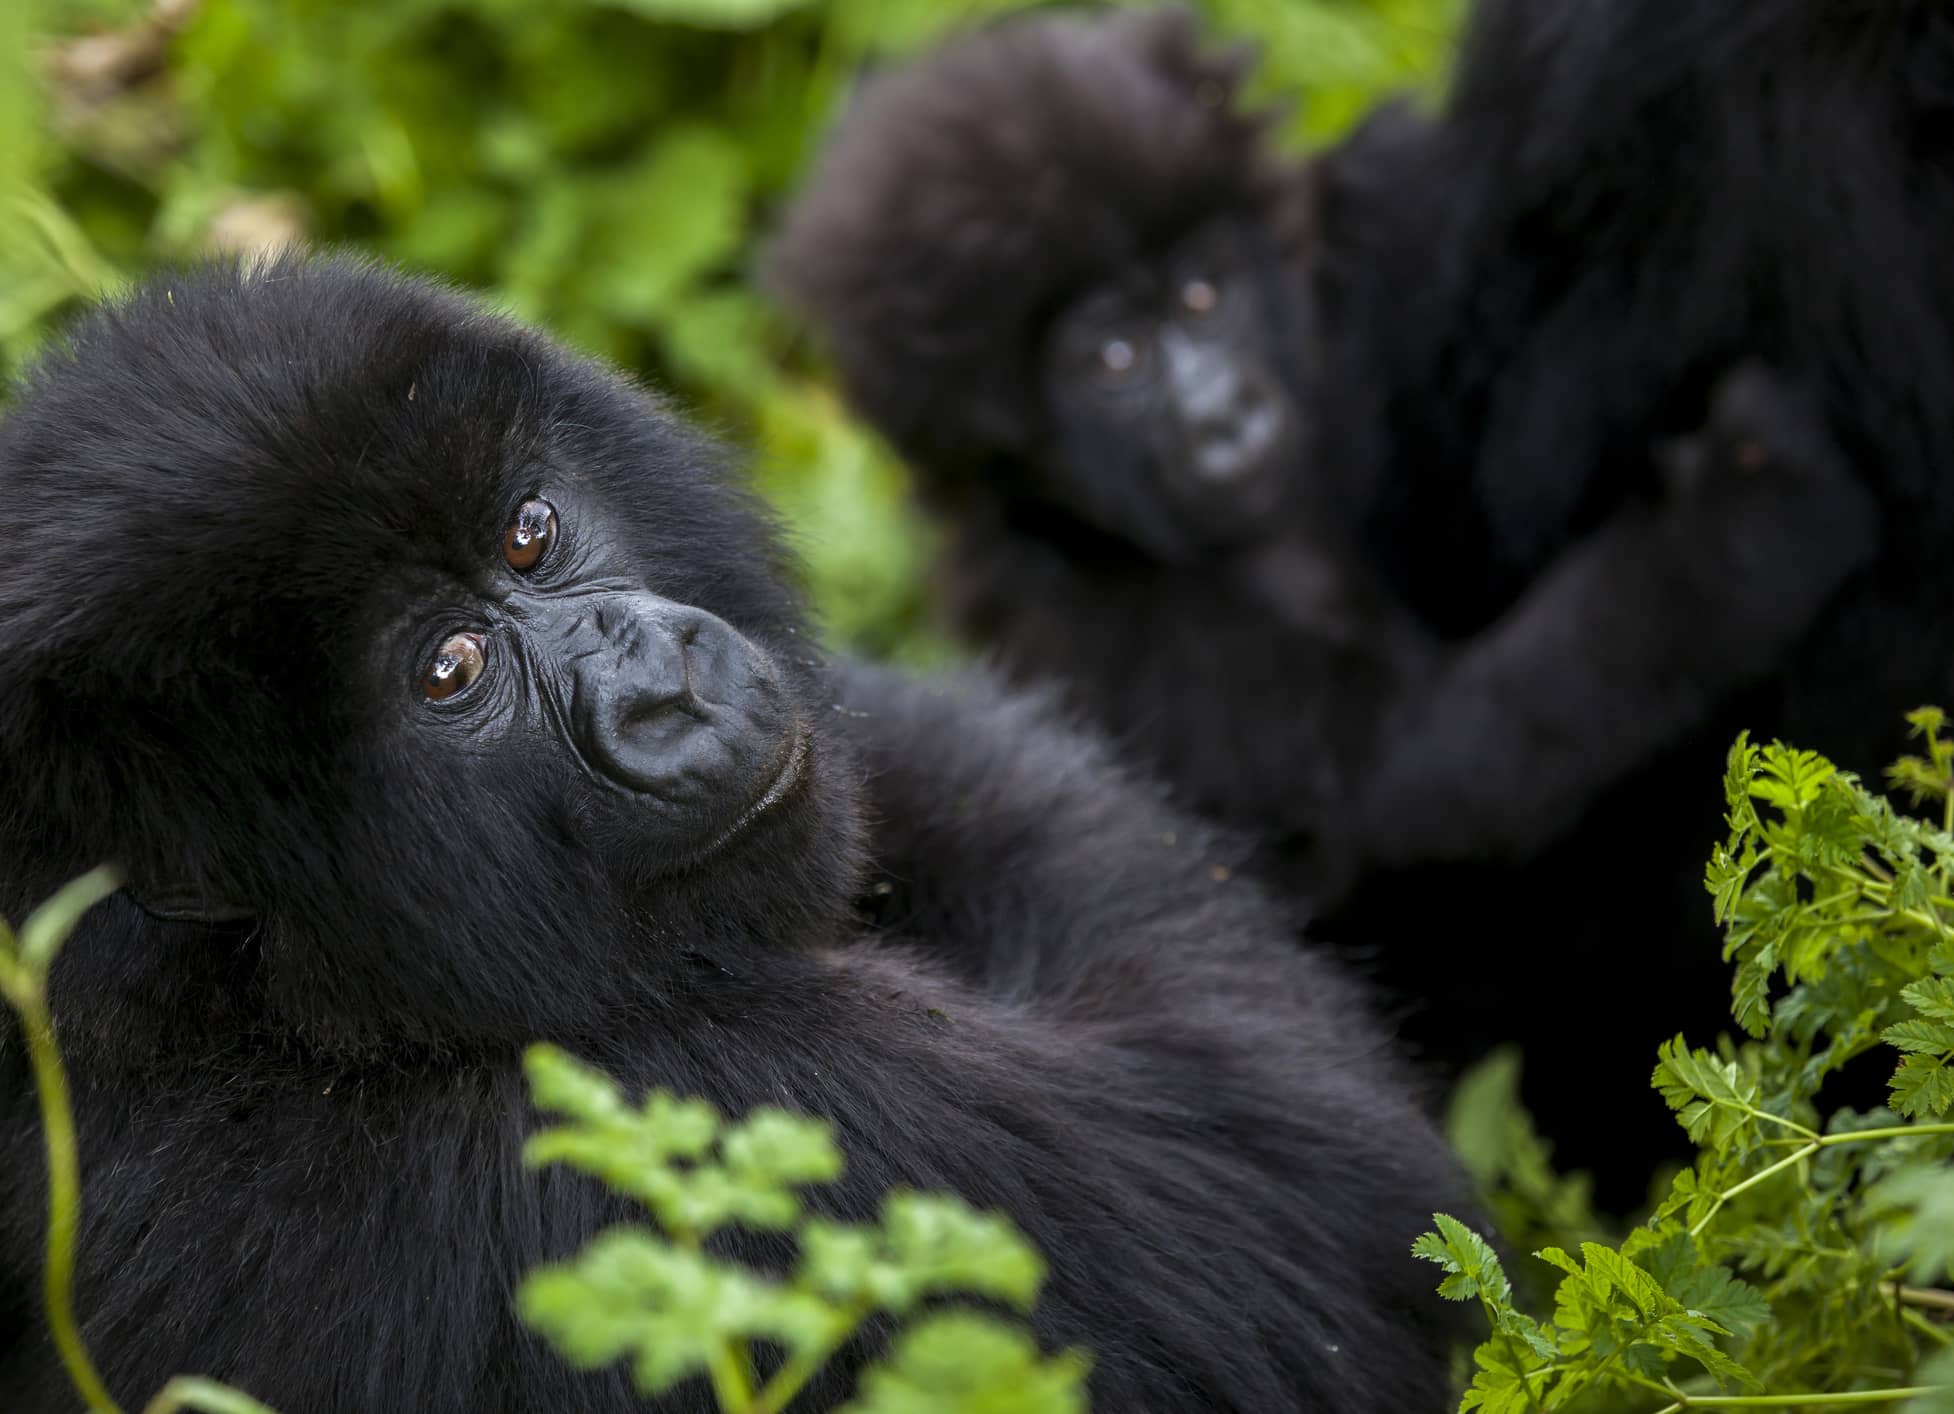  Follow in the footsteps of Rwanda’s mountain gorillas   